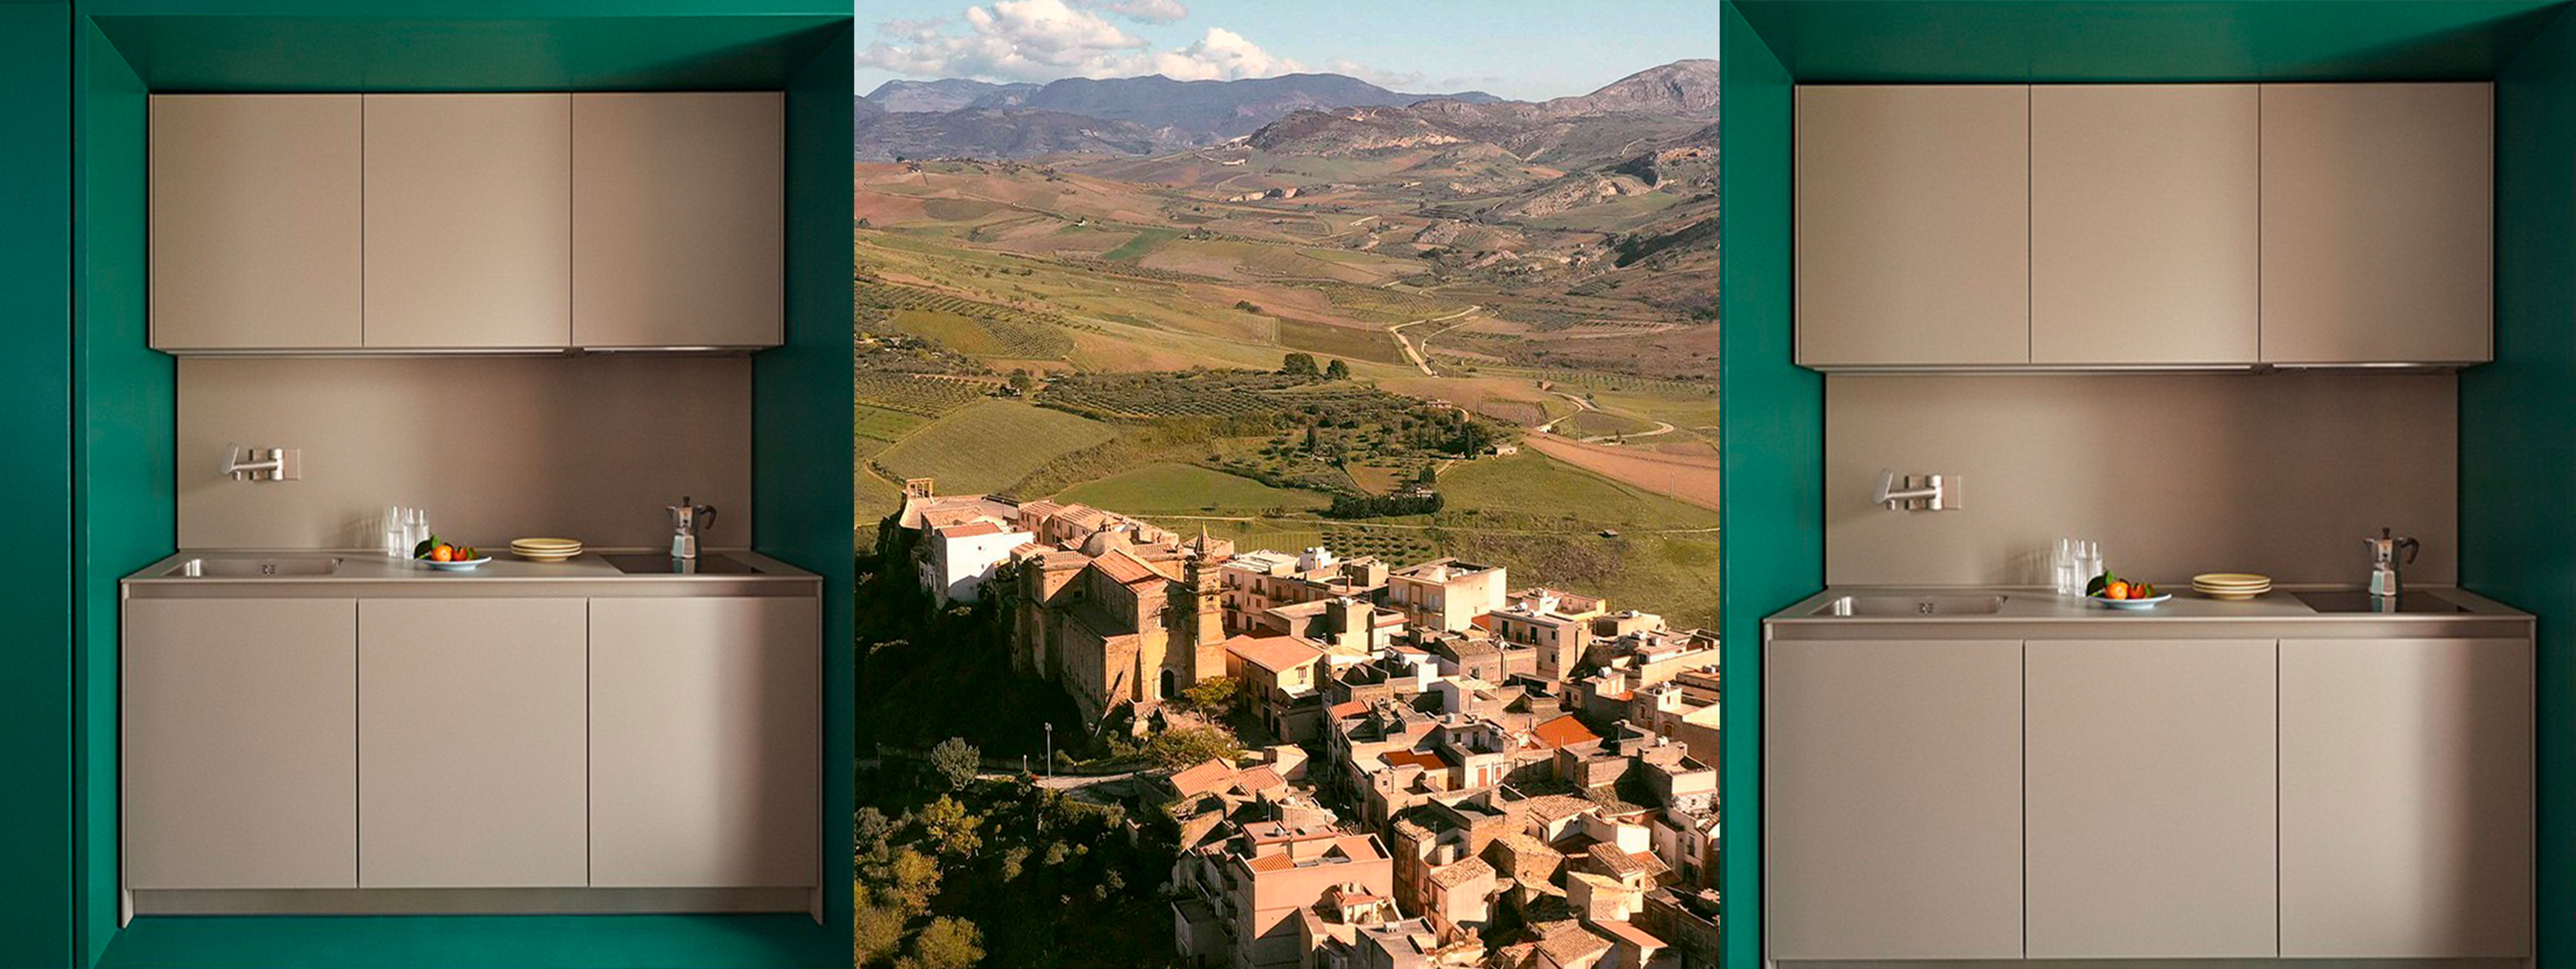 Airbnb ищут человека, который будет год бесплатно жить на юге Сицилии